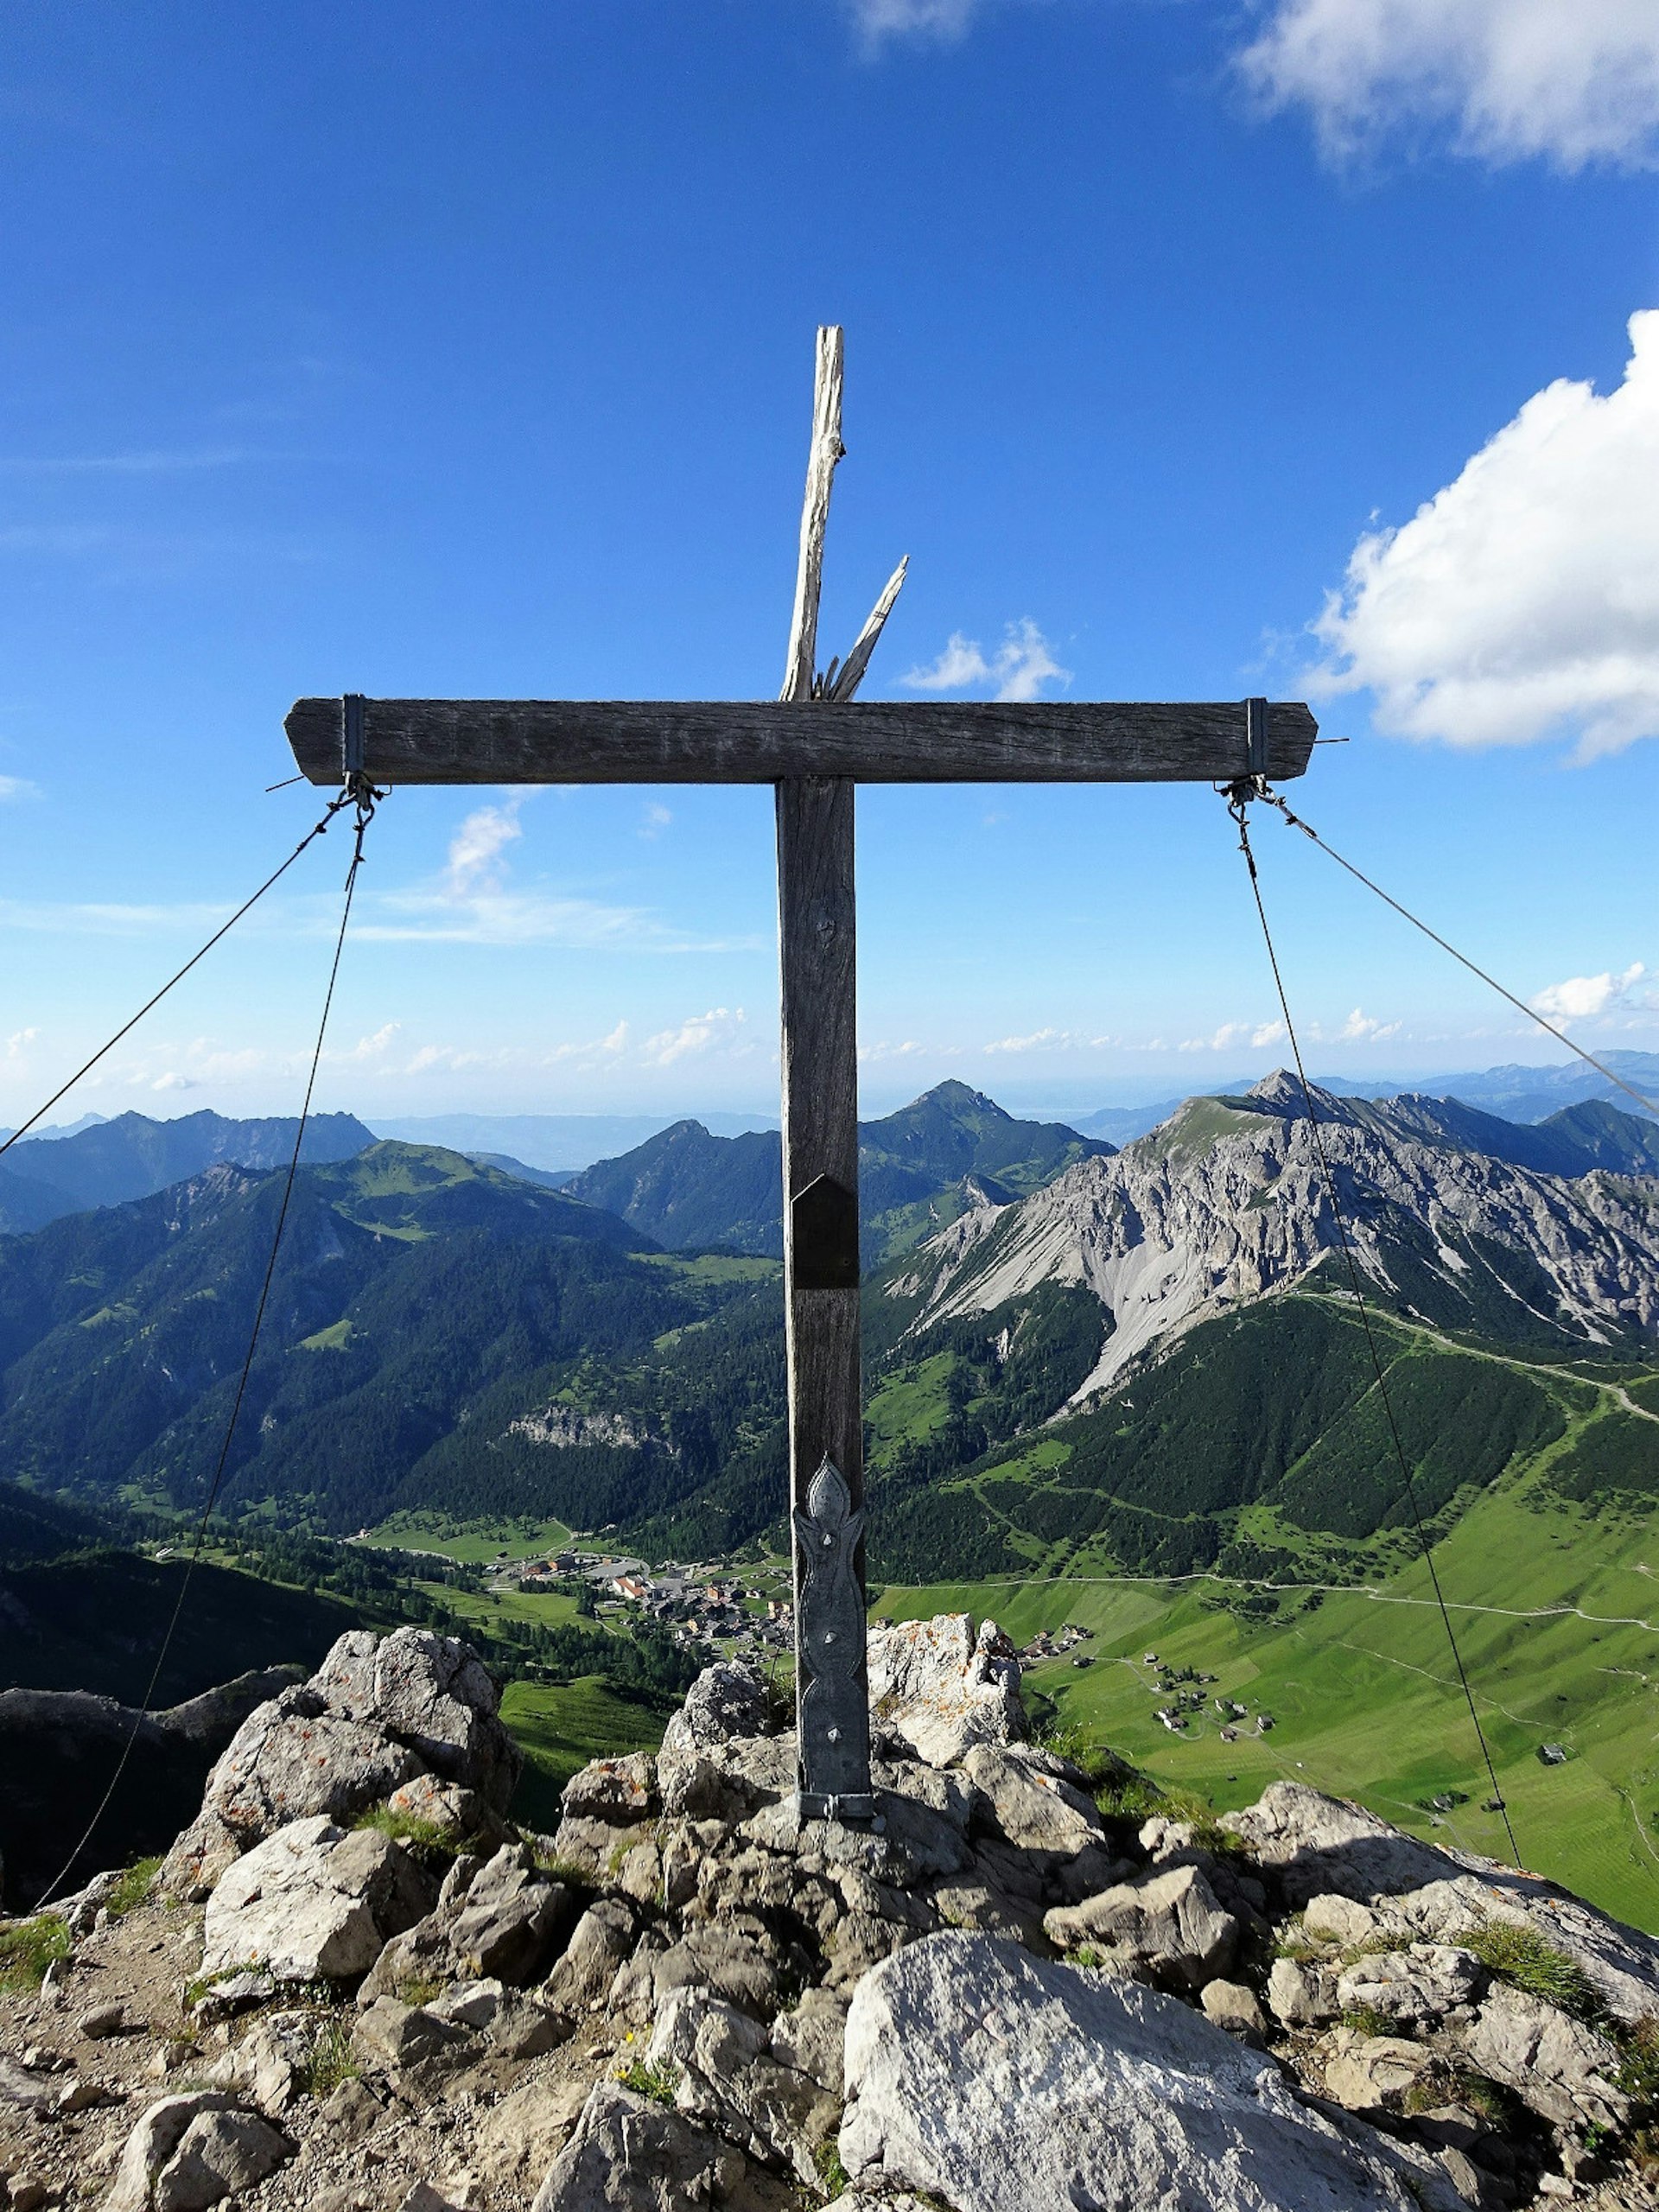 The Augstenberg summit offers views into the Liechtenstein, Swiss and Austrian Alps